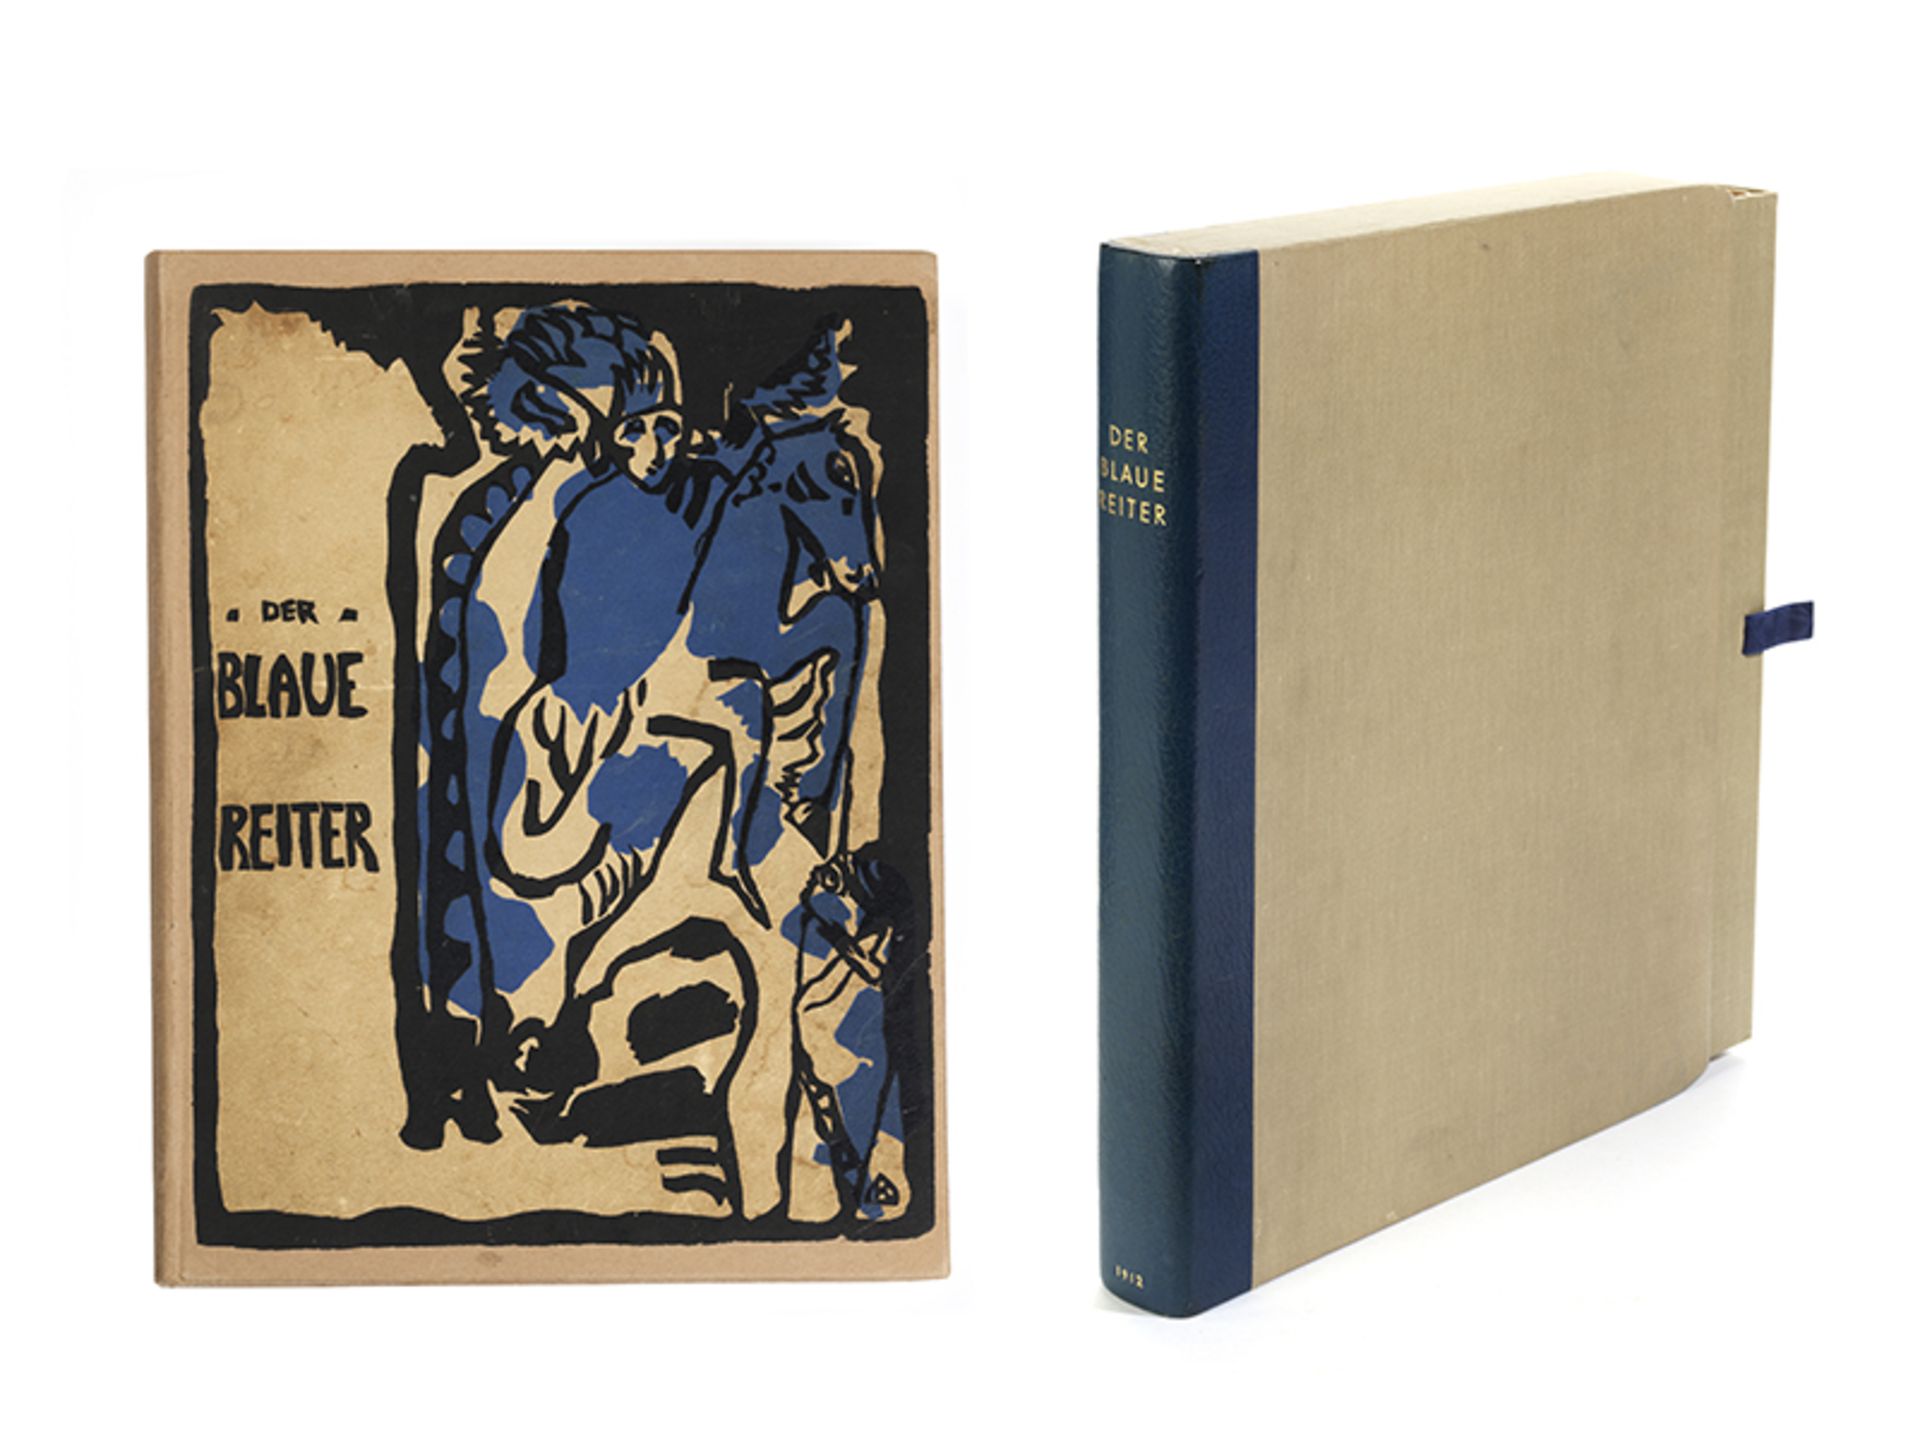 Der Blaue Reiter, Erstausgabe (1912) 31 x 24,5 x 4,2 cm. Herausgegeben von Wassily Kandinsky (1866-